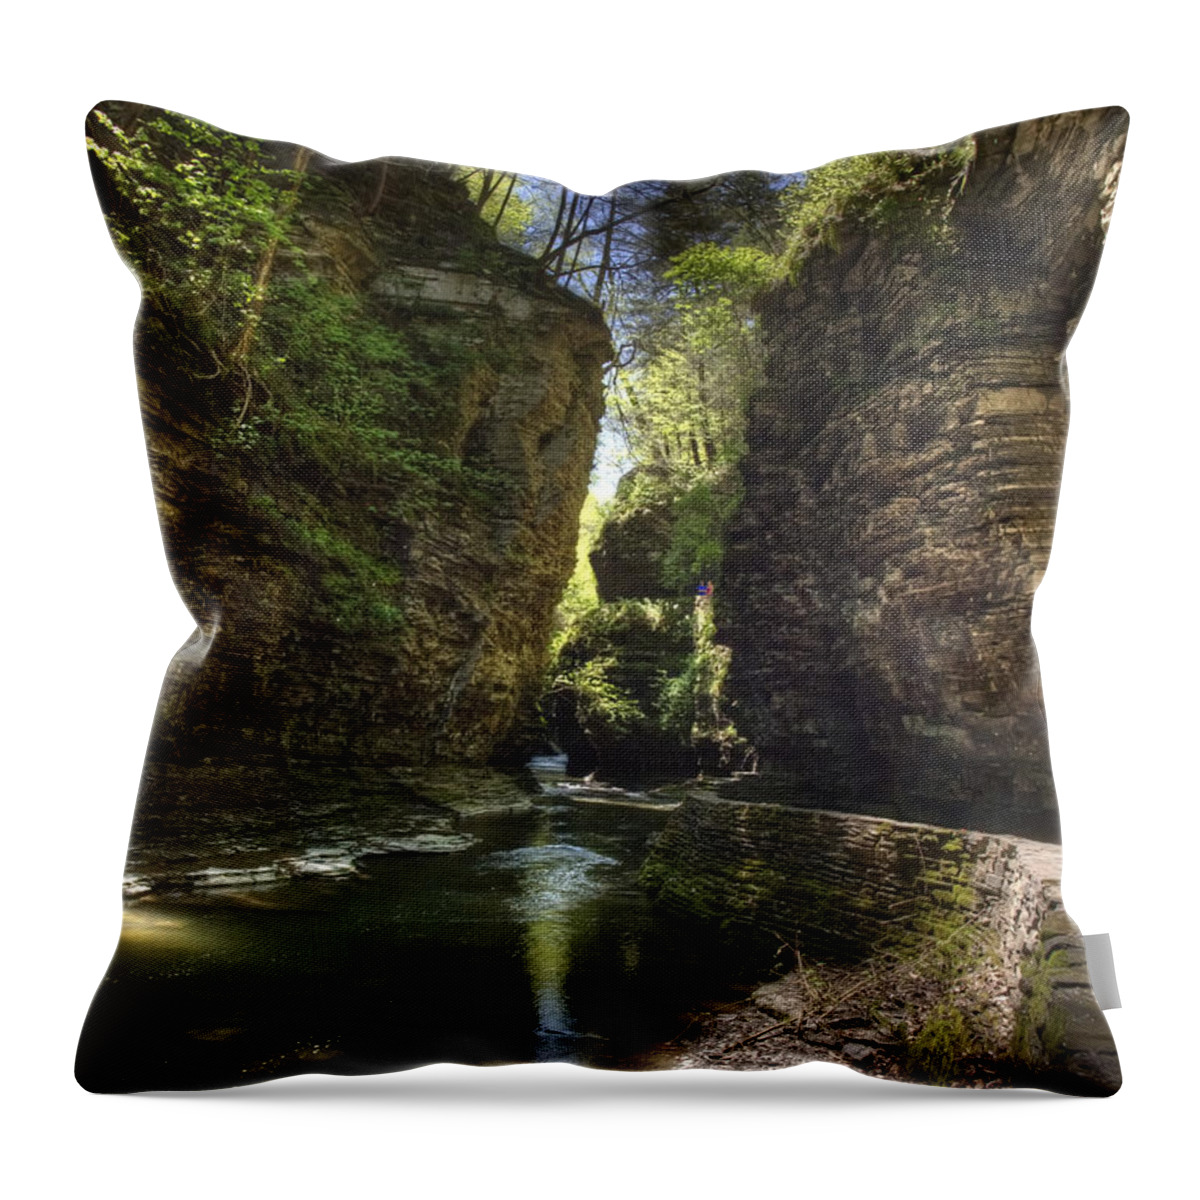 Watkins Glen Throw Pillow featuring the photograph A Moment of Stillness by Joshua House